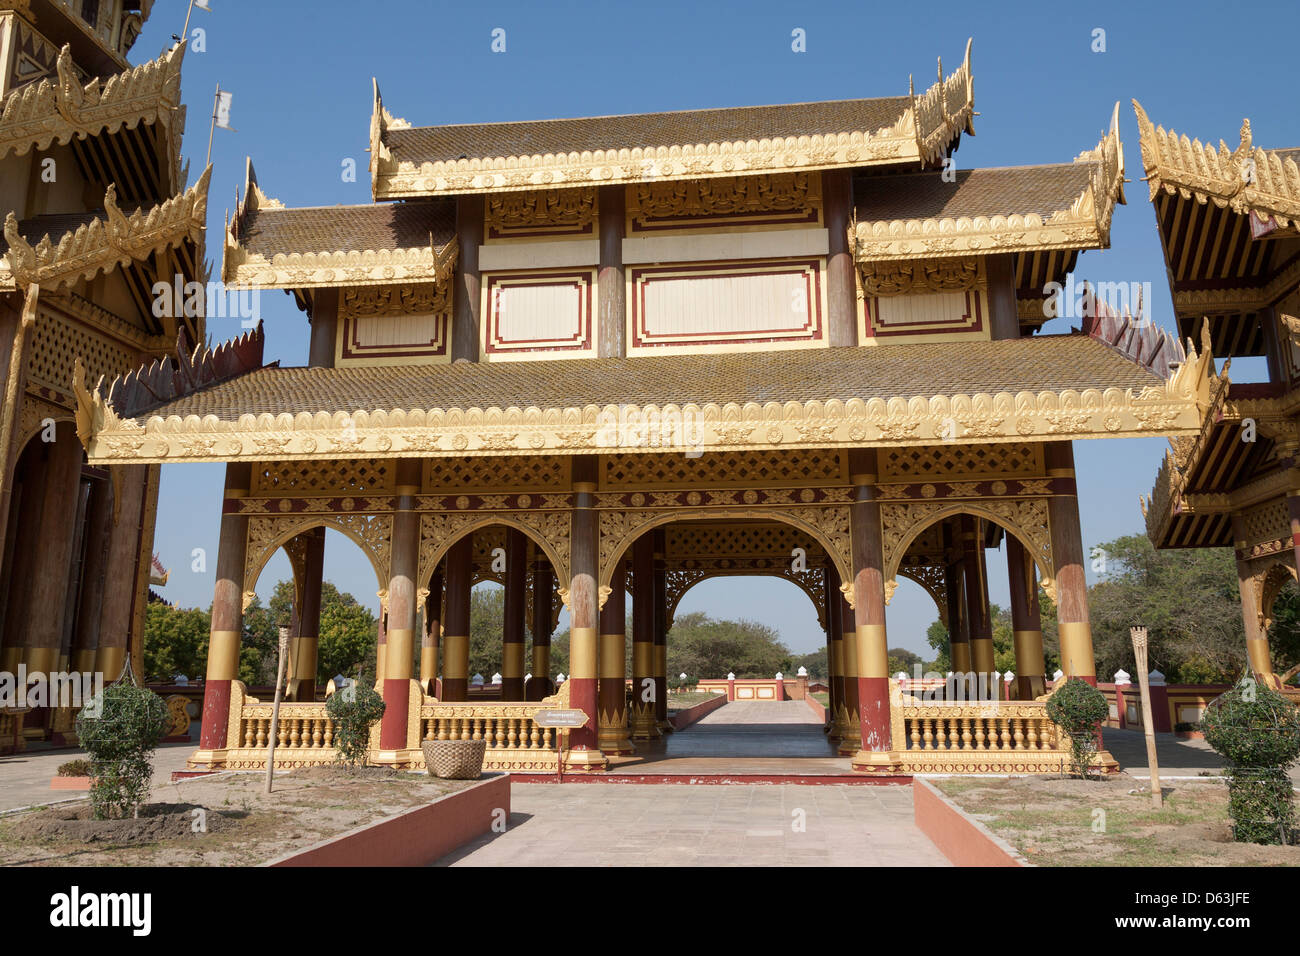 Thihathana Hall replica, Bagan Golden Palace, Bagan, Myanmar, (Burma) Stock Photo